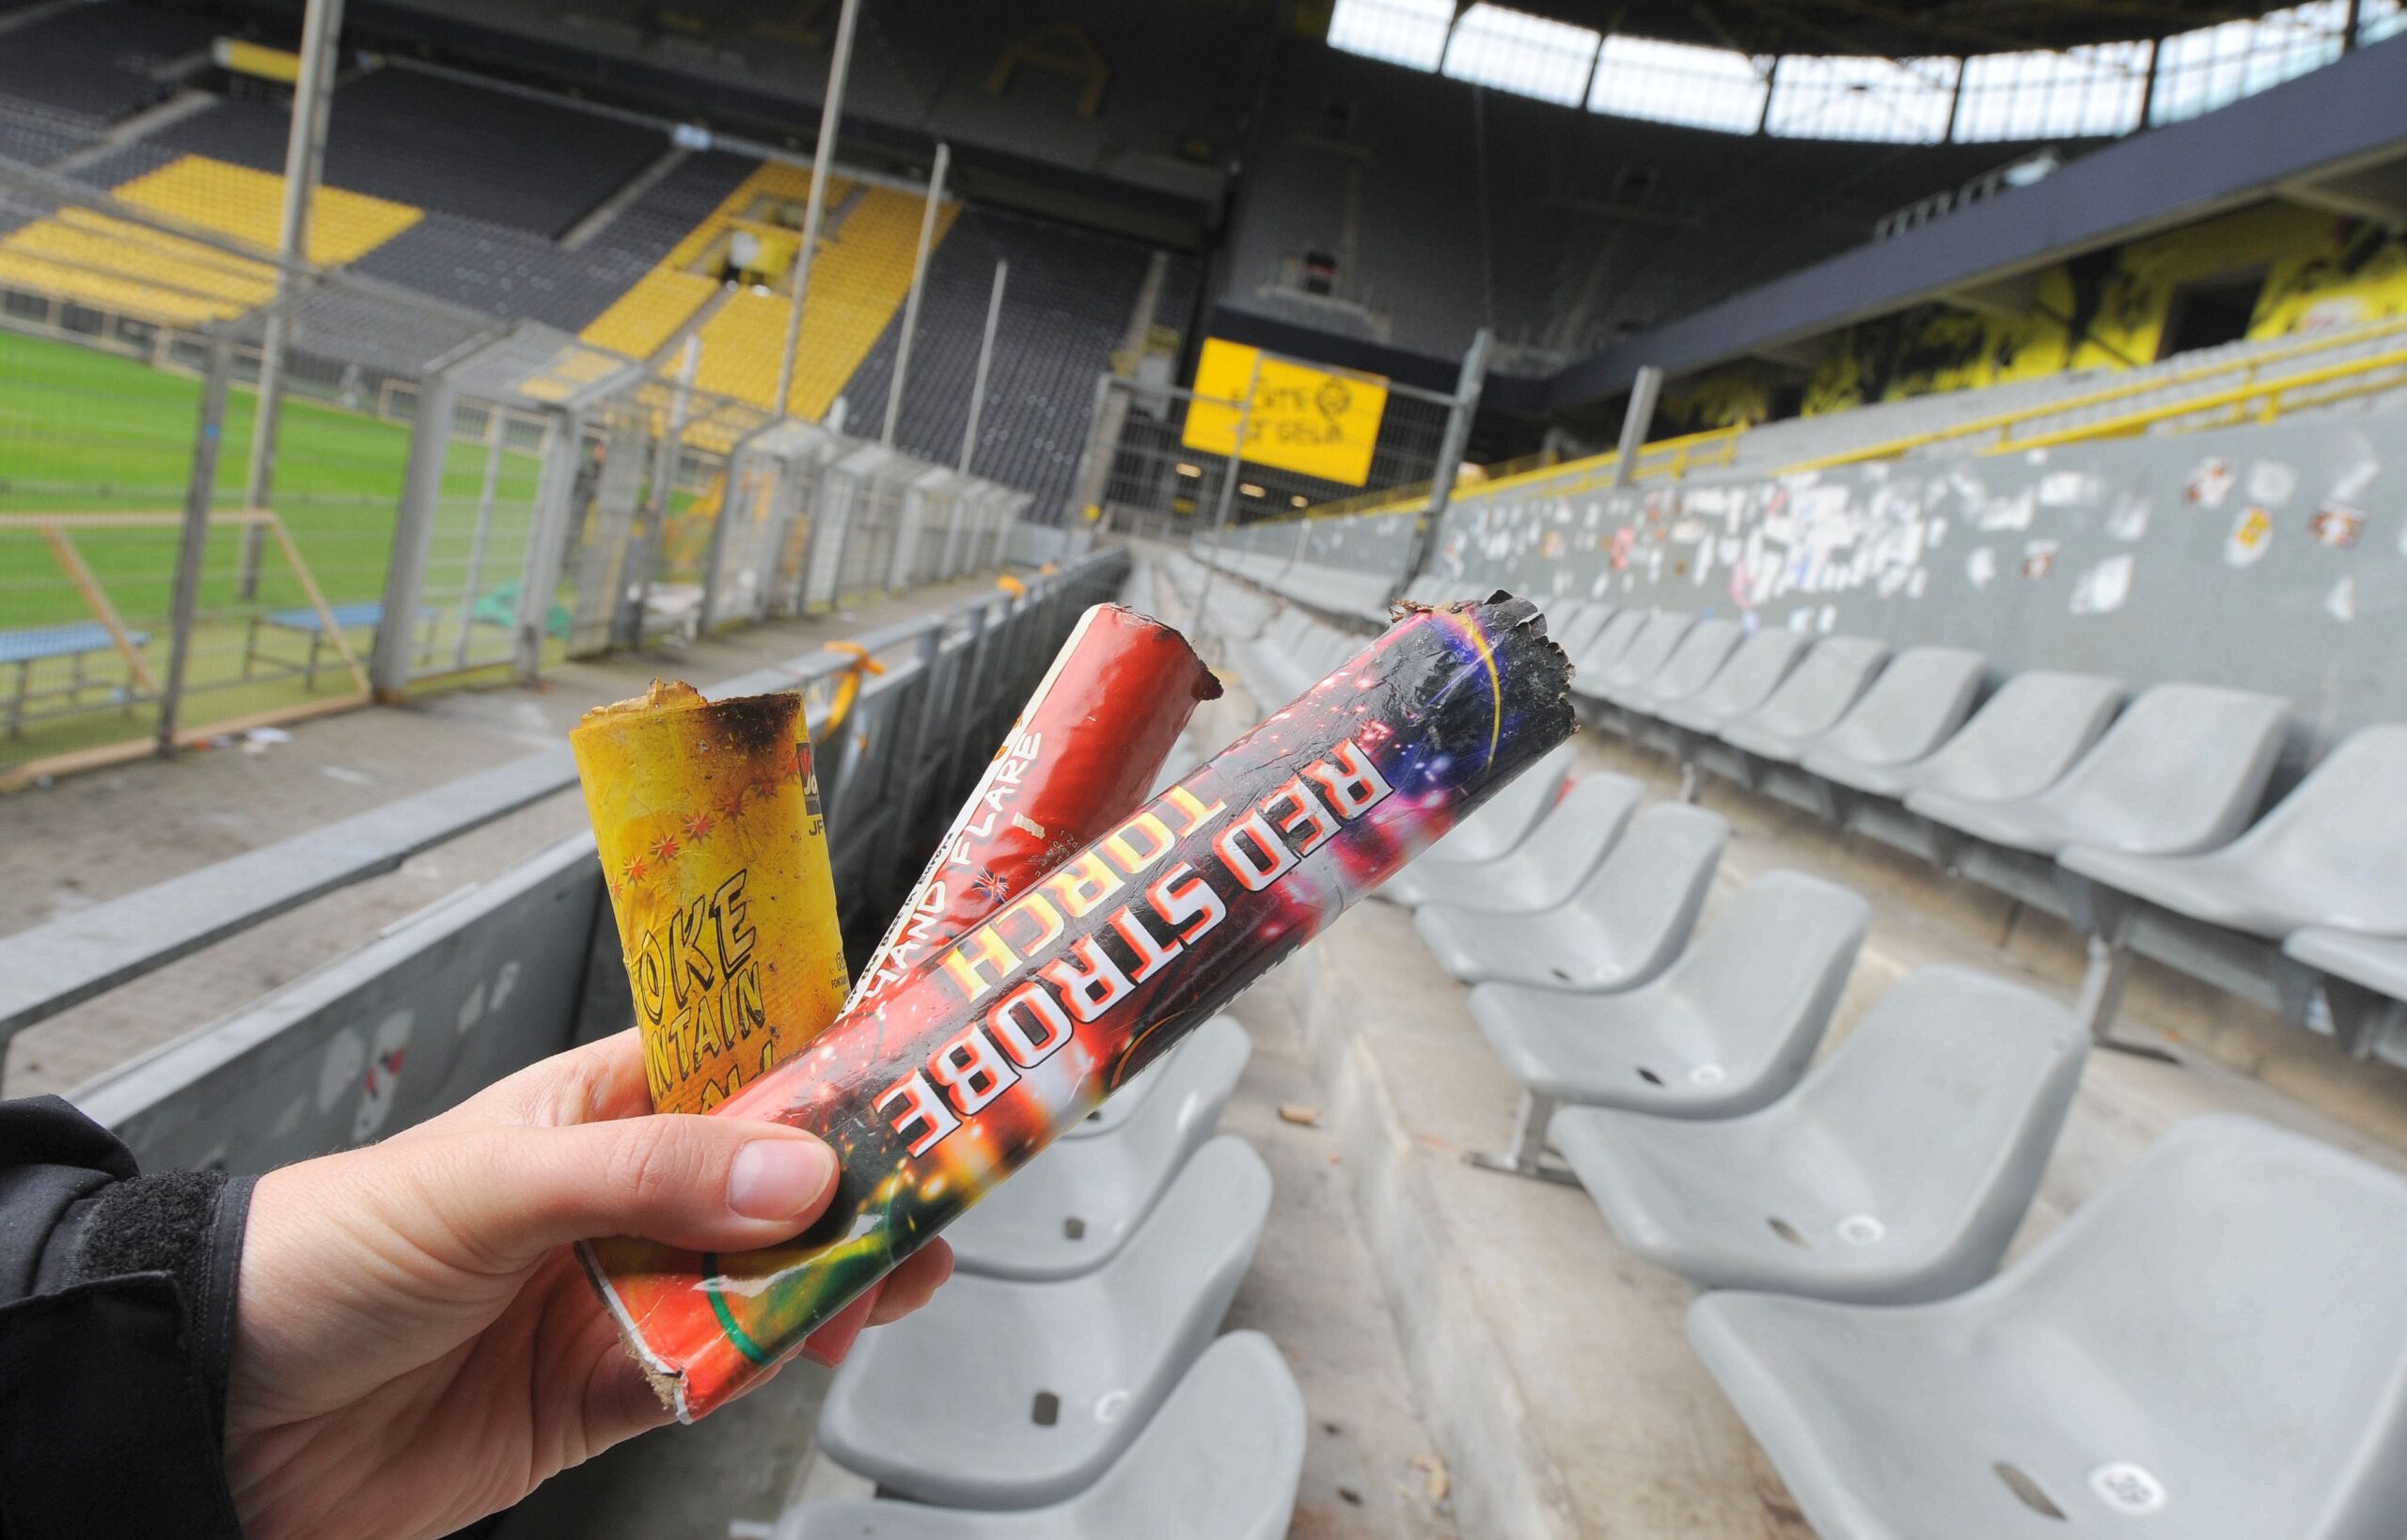 Am Tag nach dem Pokalspiel zwischen Borussia Dortmund und Dynamo Dresden zeigen sich die Schäden am Gästeblock: zerstörte Werbebanden, angekokelte Fahnen und Reste von Pyrotechnik.